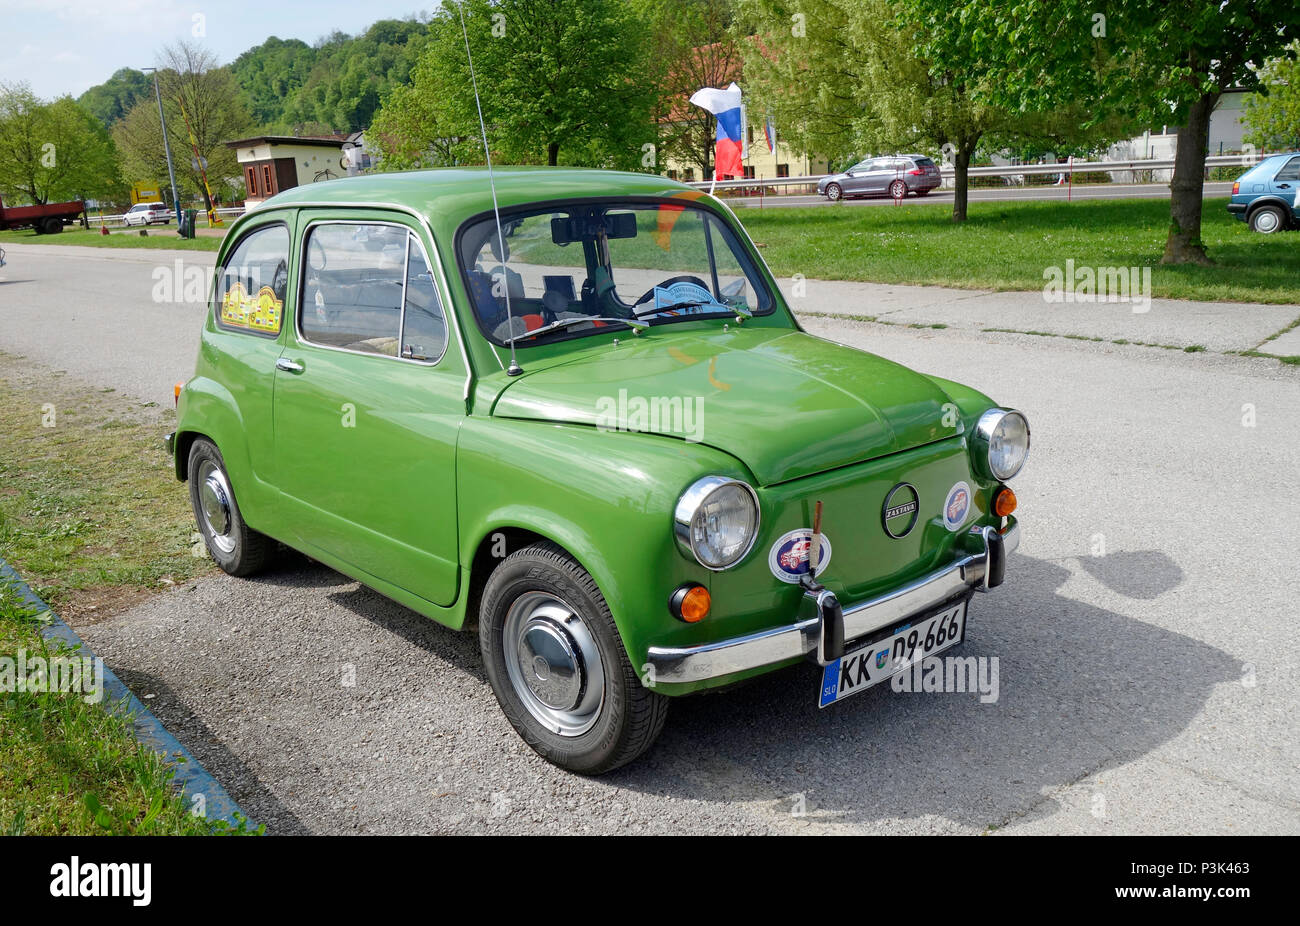 "Zastava 750' un coche de la ciudad de supermini realizados por el fabricante de automóviles de Serbia Zavod Crvena Zastava de Kragujevac fabricados bajo licencia desde 1962. Era una versión de Foto de stock